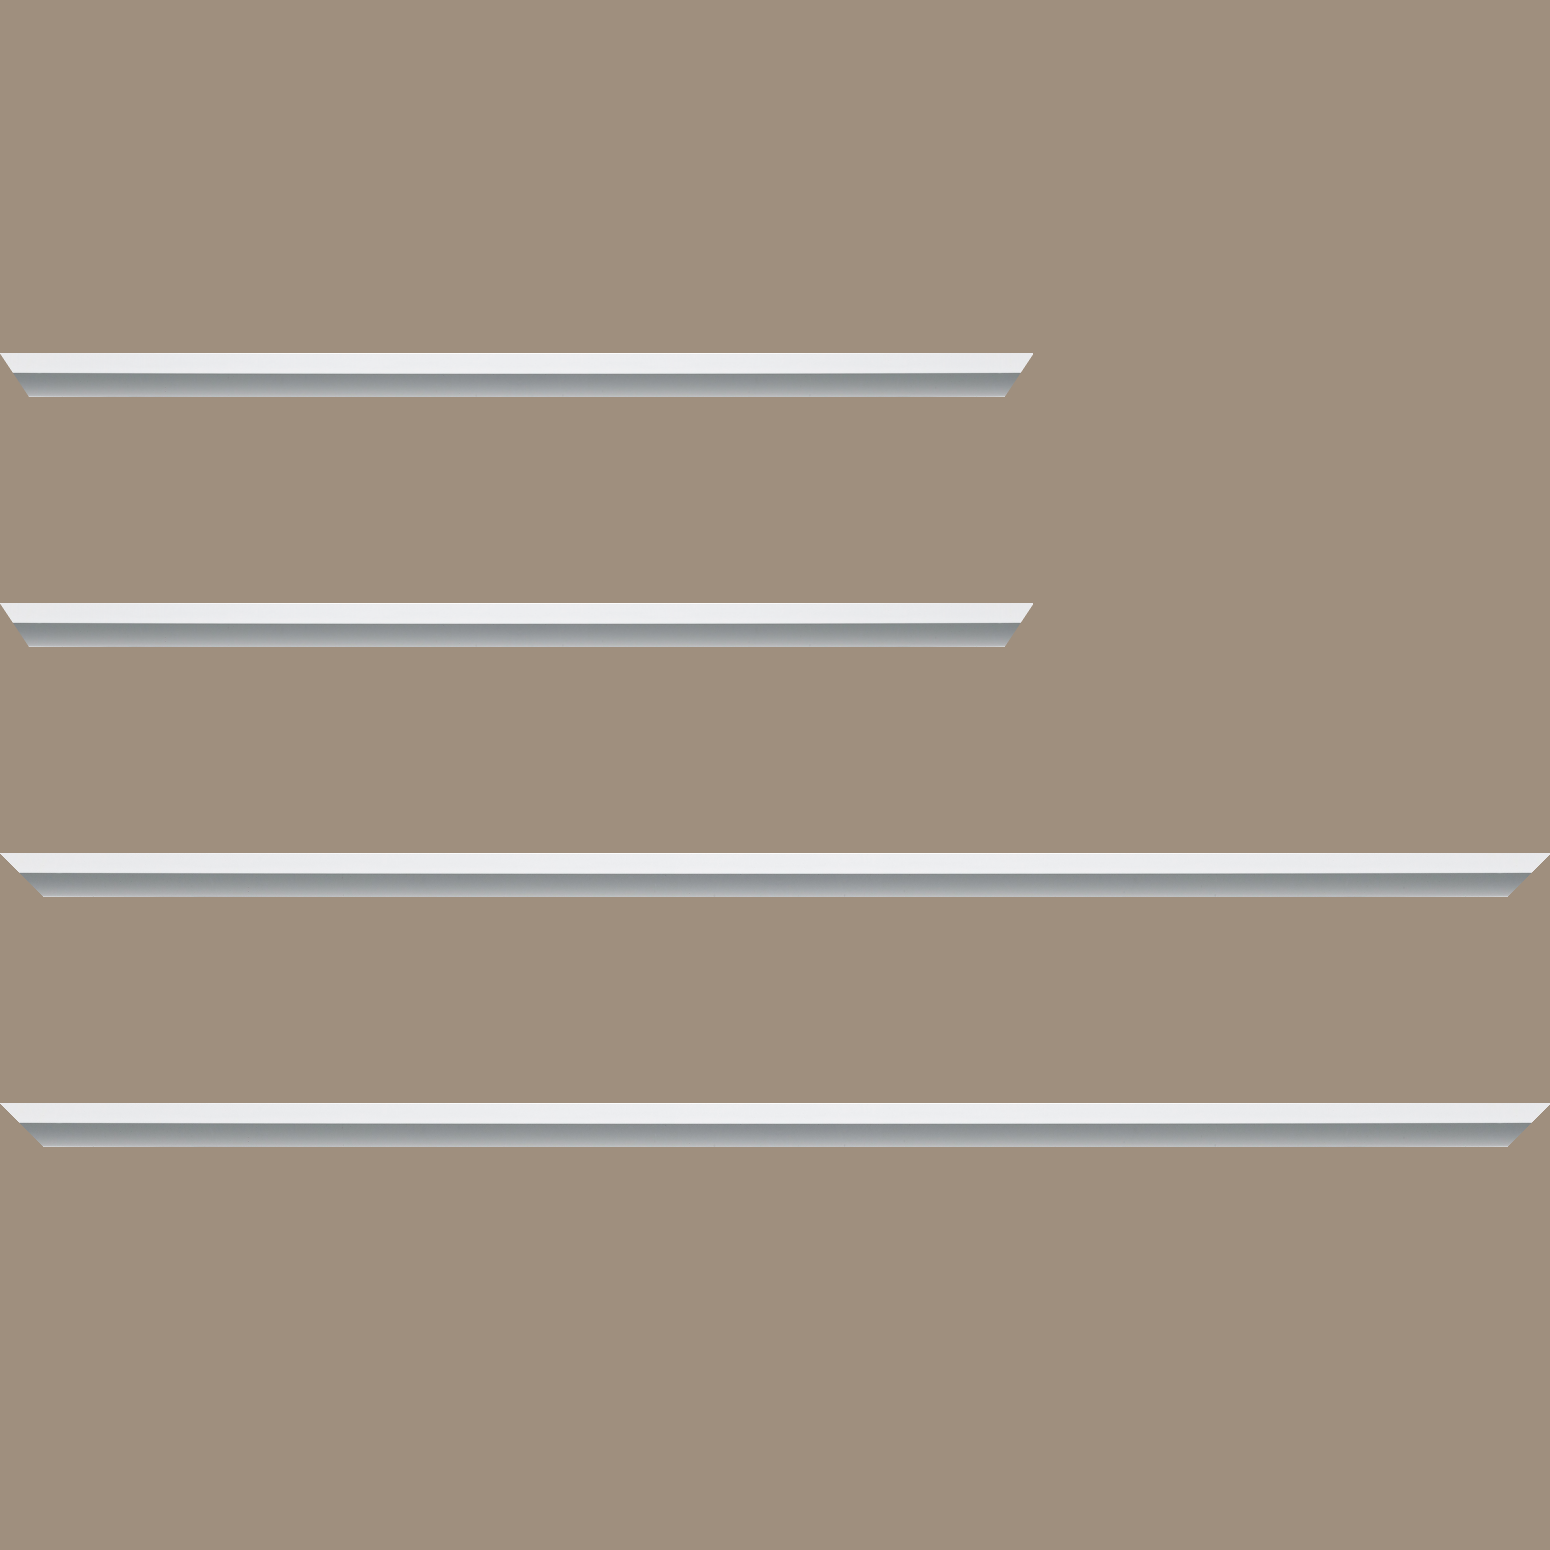 Baguette aluminium profil plat largeur 7mm, couleur blanc mat ,(le sujet qui sera glissé dans le cadre sera en retrait de 9mm de la face du cadre assurant un effet très contemporain) mise en place du sujet rapide et simple: assemblage du cadre par double équerre à vis (livré avec le système d'accrochage qui se glisse dans le profilé) encadrement non assemblé,  livré avec son sachet d'accessoires - 25x25